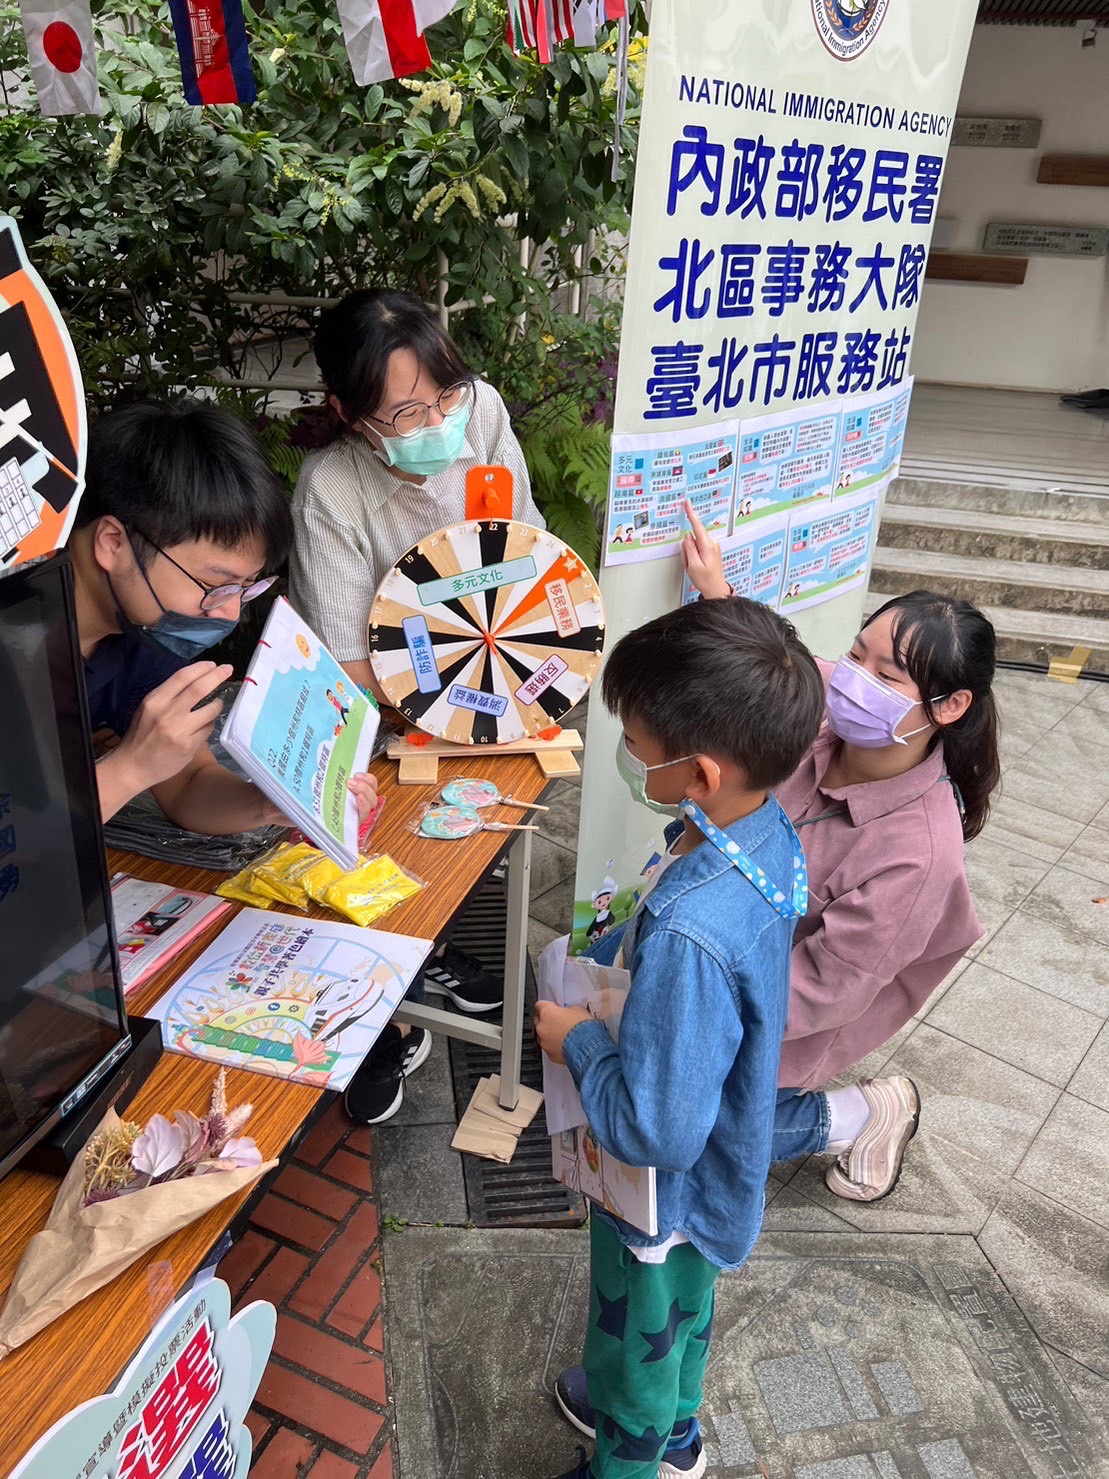 4.移民署臺北市服務站也在現場設攤宣導外來人口在臺生活諮詢服務熱線1990、反賄選小遊戲與小朋友及家長互動。